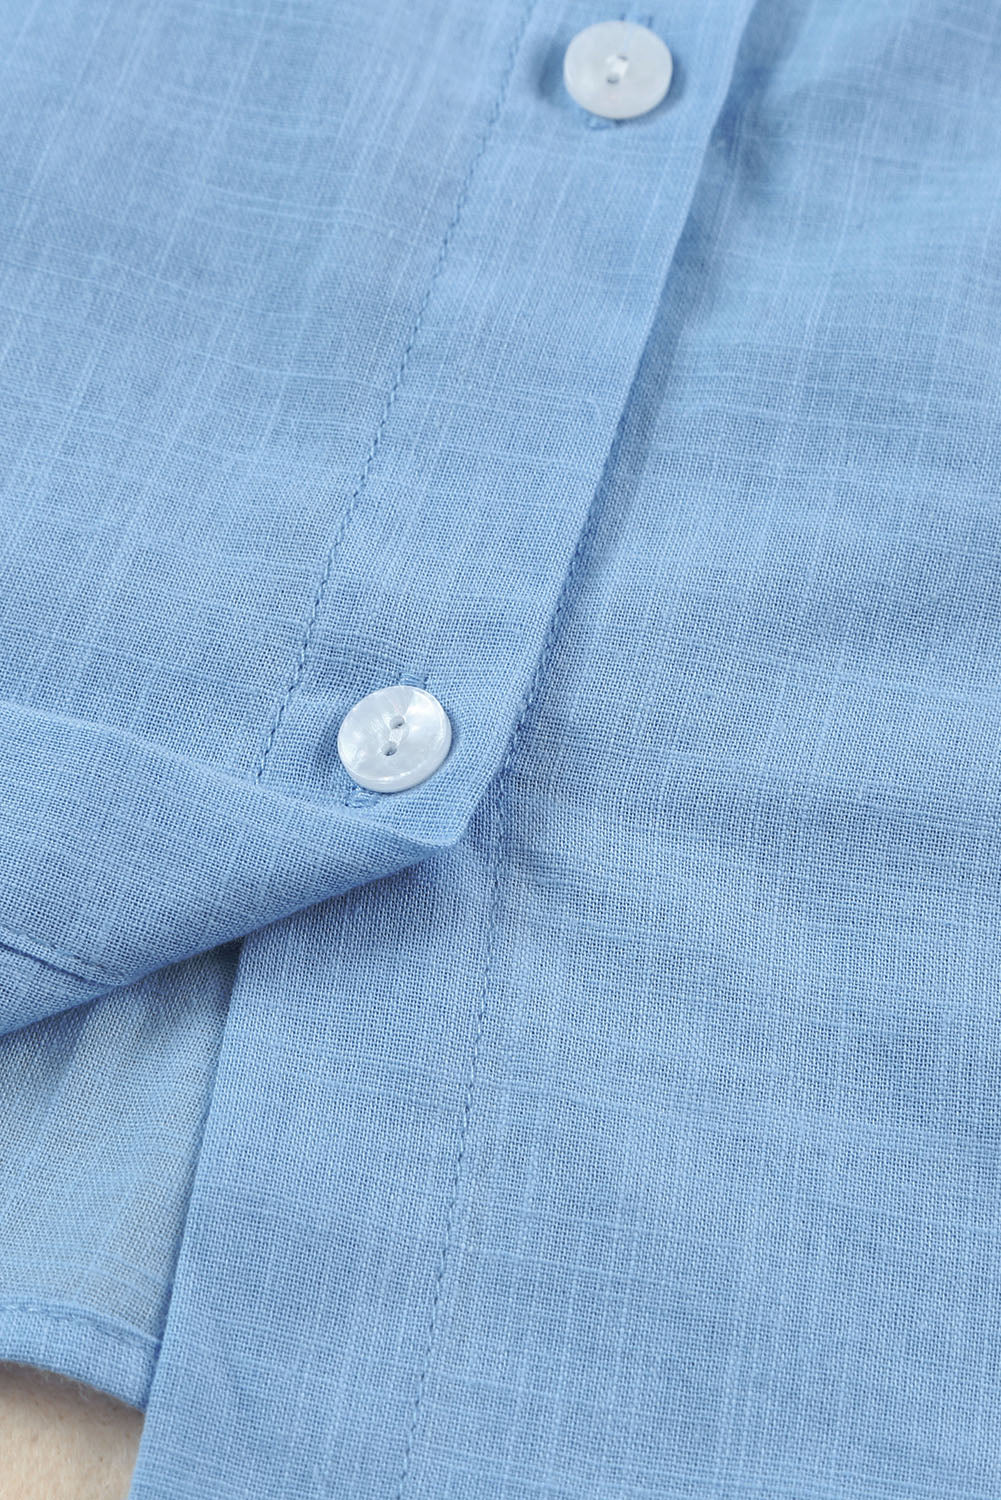 Sky Blue Ruffle Trim Soft Lightweight Sleeveless Shirt Tank Tops JT's Designer Fashion